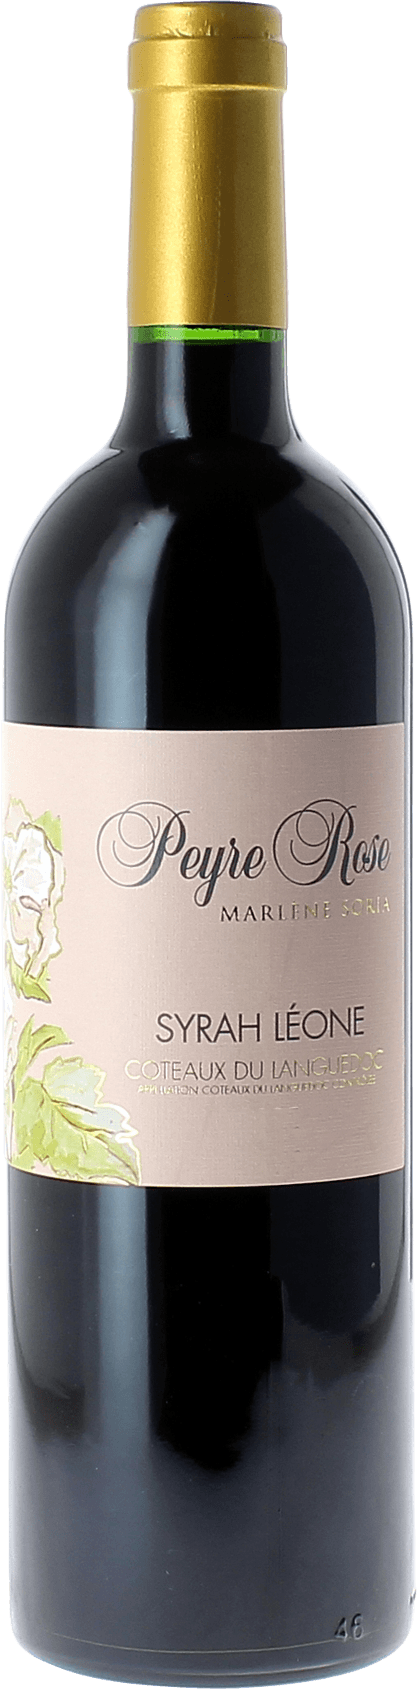 Peyre rose syrah leone 1998  Coteaux du languedoc AOC, Languedoc rouge